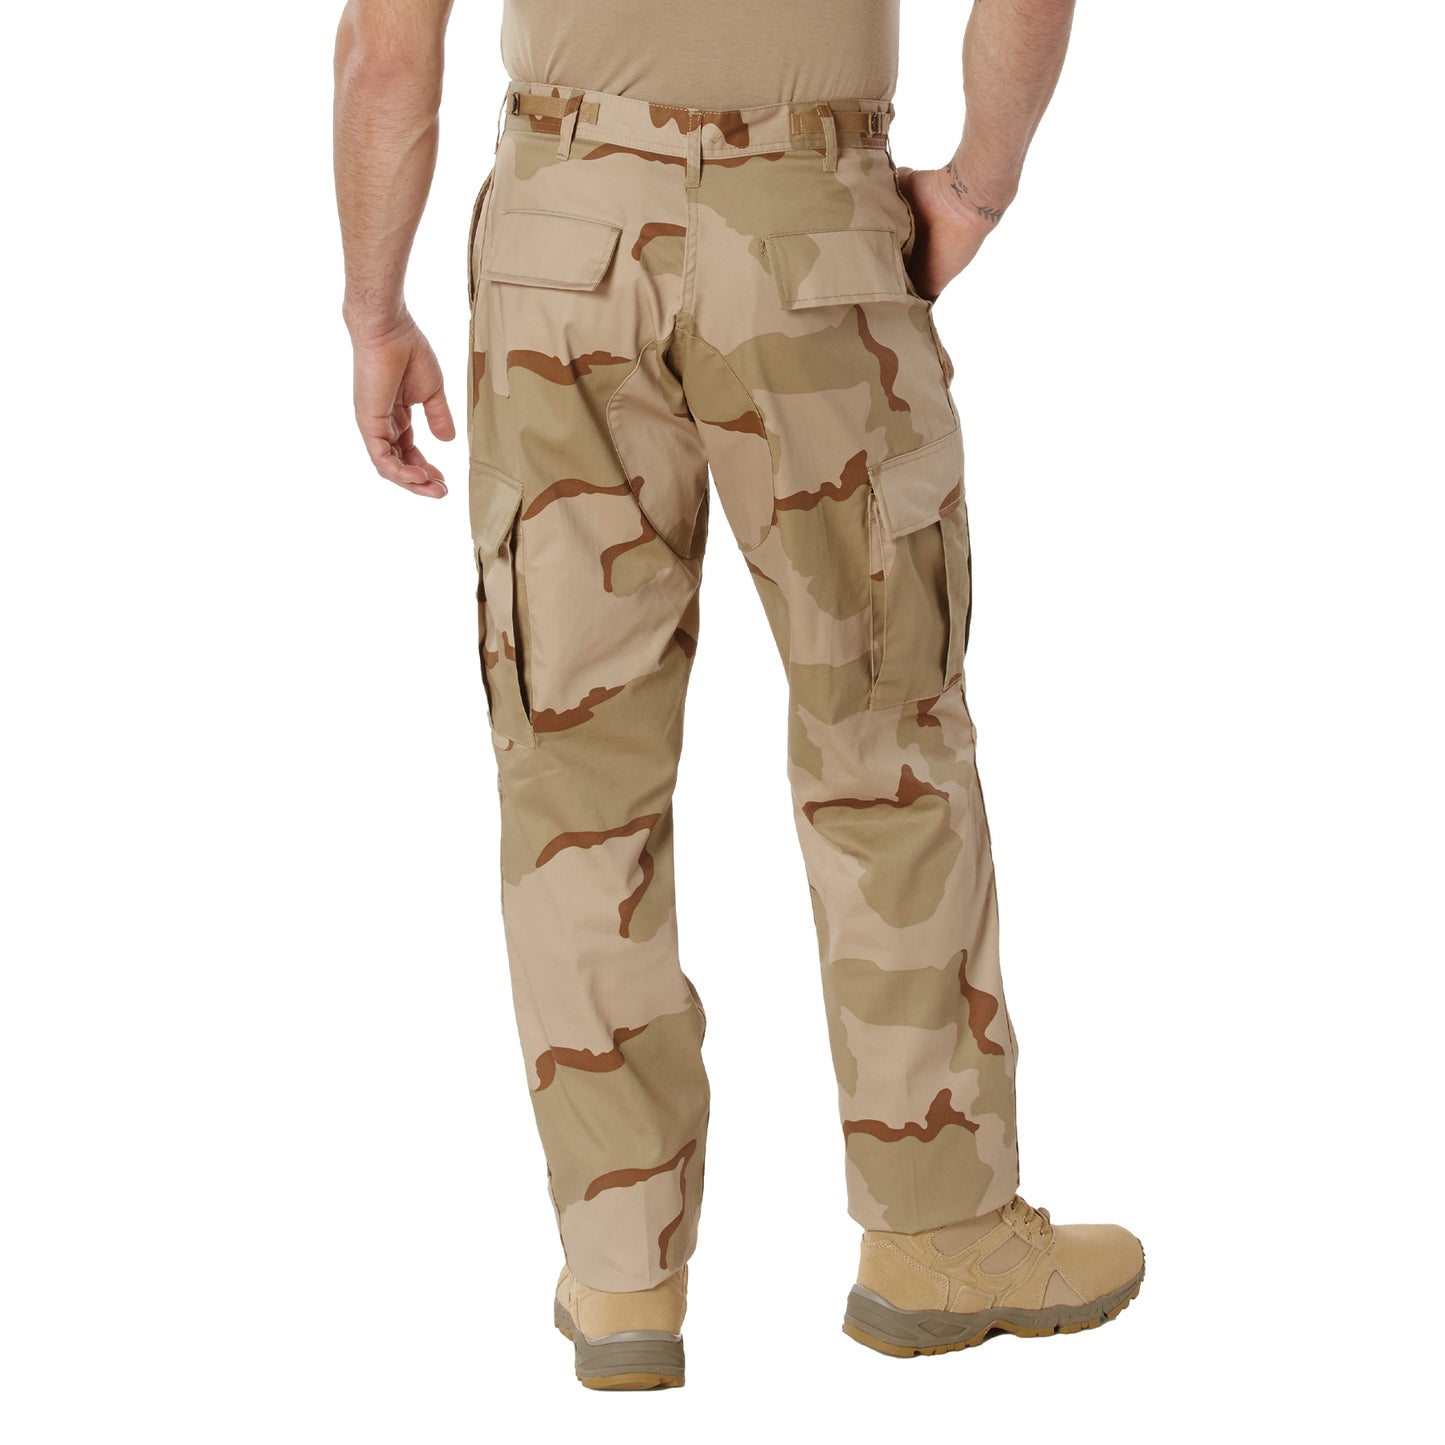 Rothco Camo Tactical BDU Pants - Tri Color Desert Camo